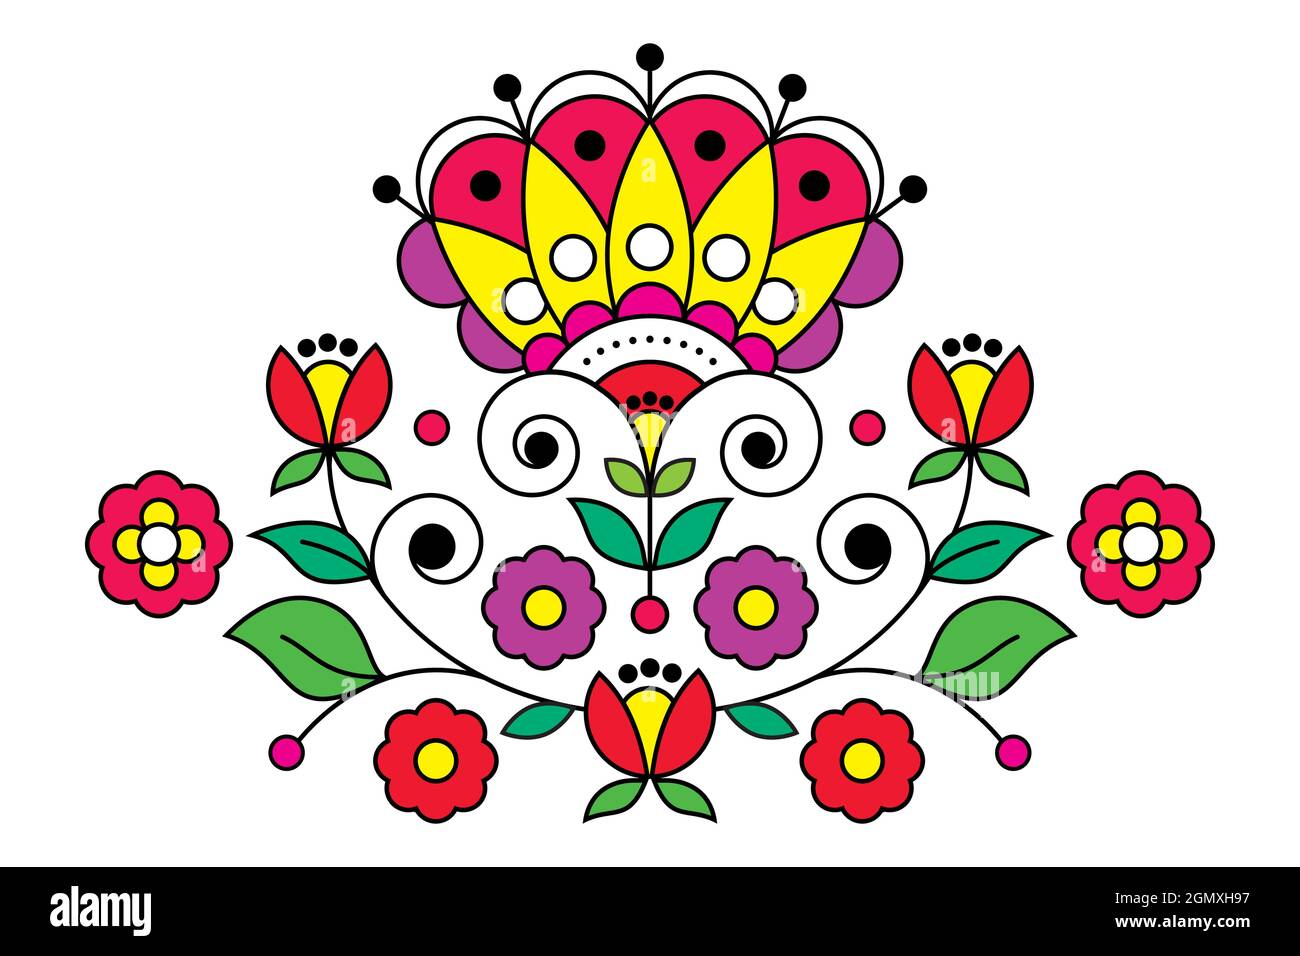 Skandinavische, nordische Volkskunst-Vektor-Muster mit floralem Motiv, inspiriert von traditionellen Stickereien aus Schweden - Grußkarte oder Hochzeit inviten Stock Vektor